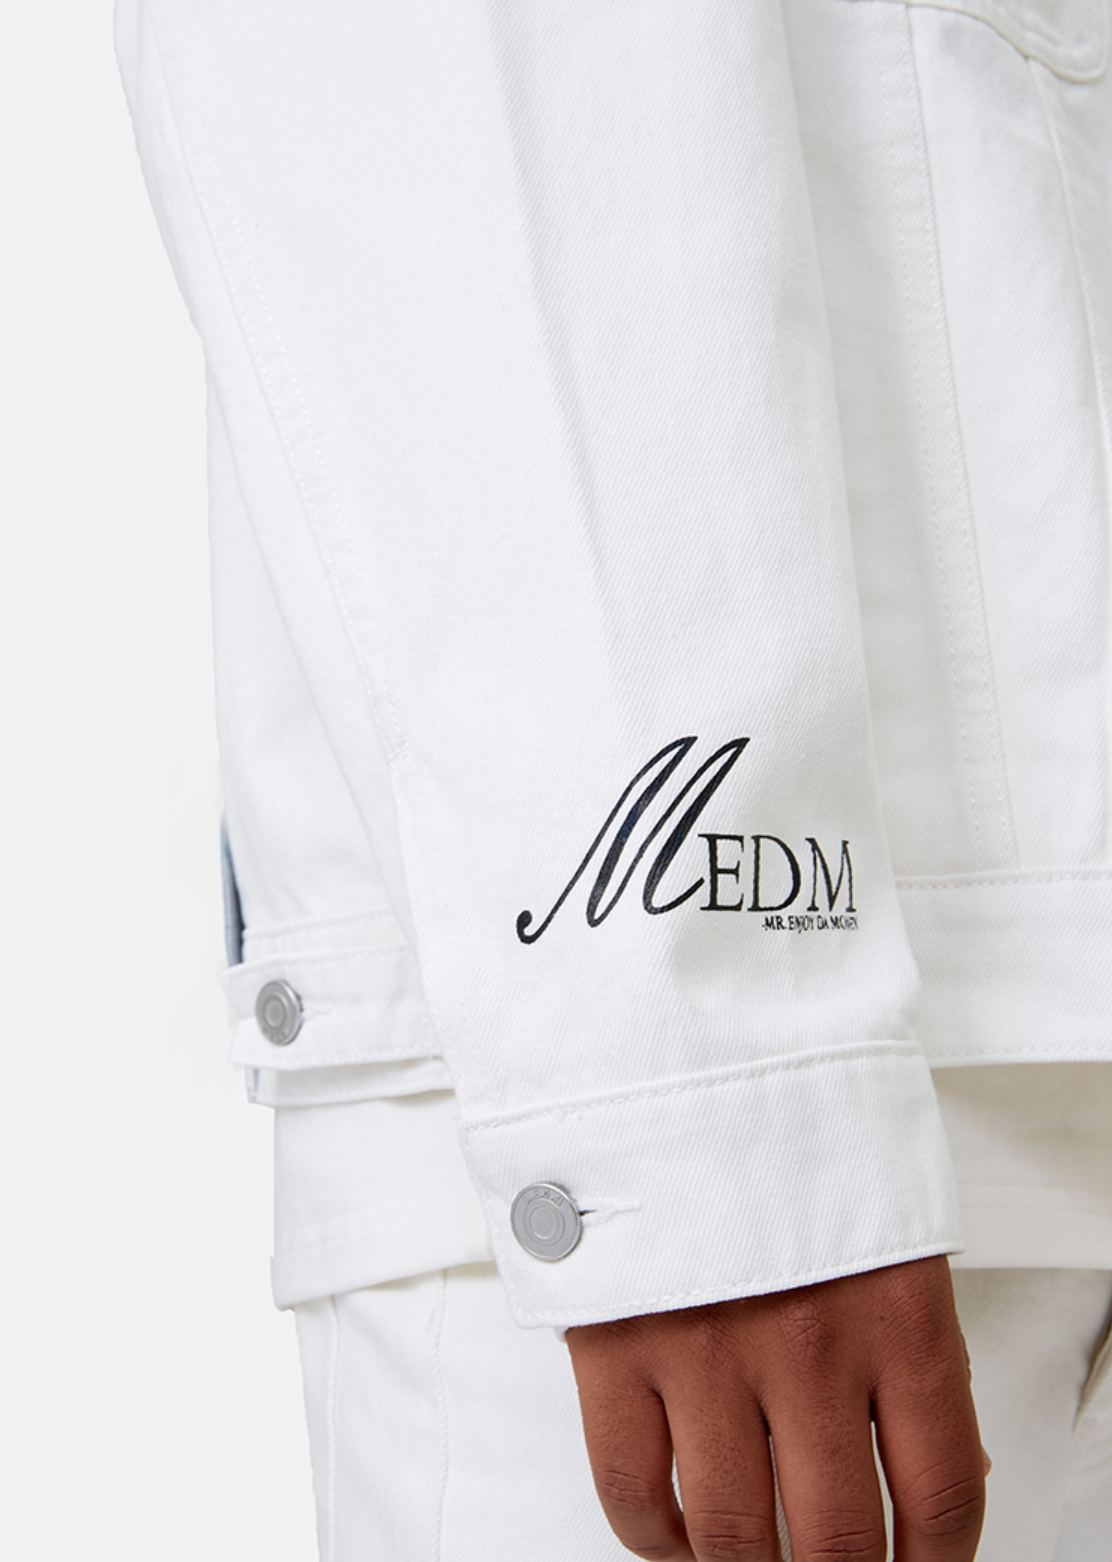 MEDM Casual Letter Logo Denim Jacket